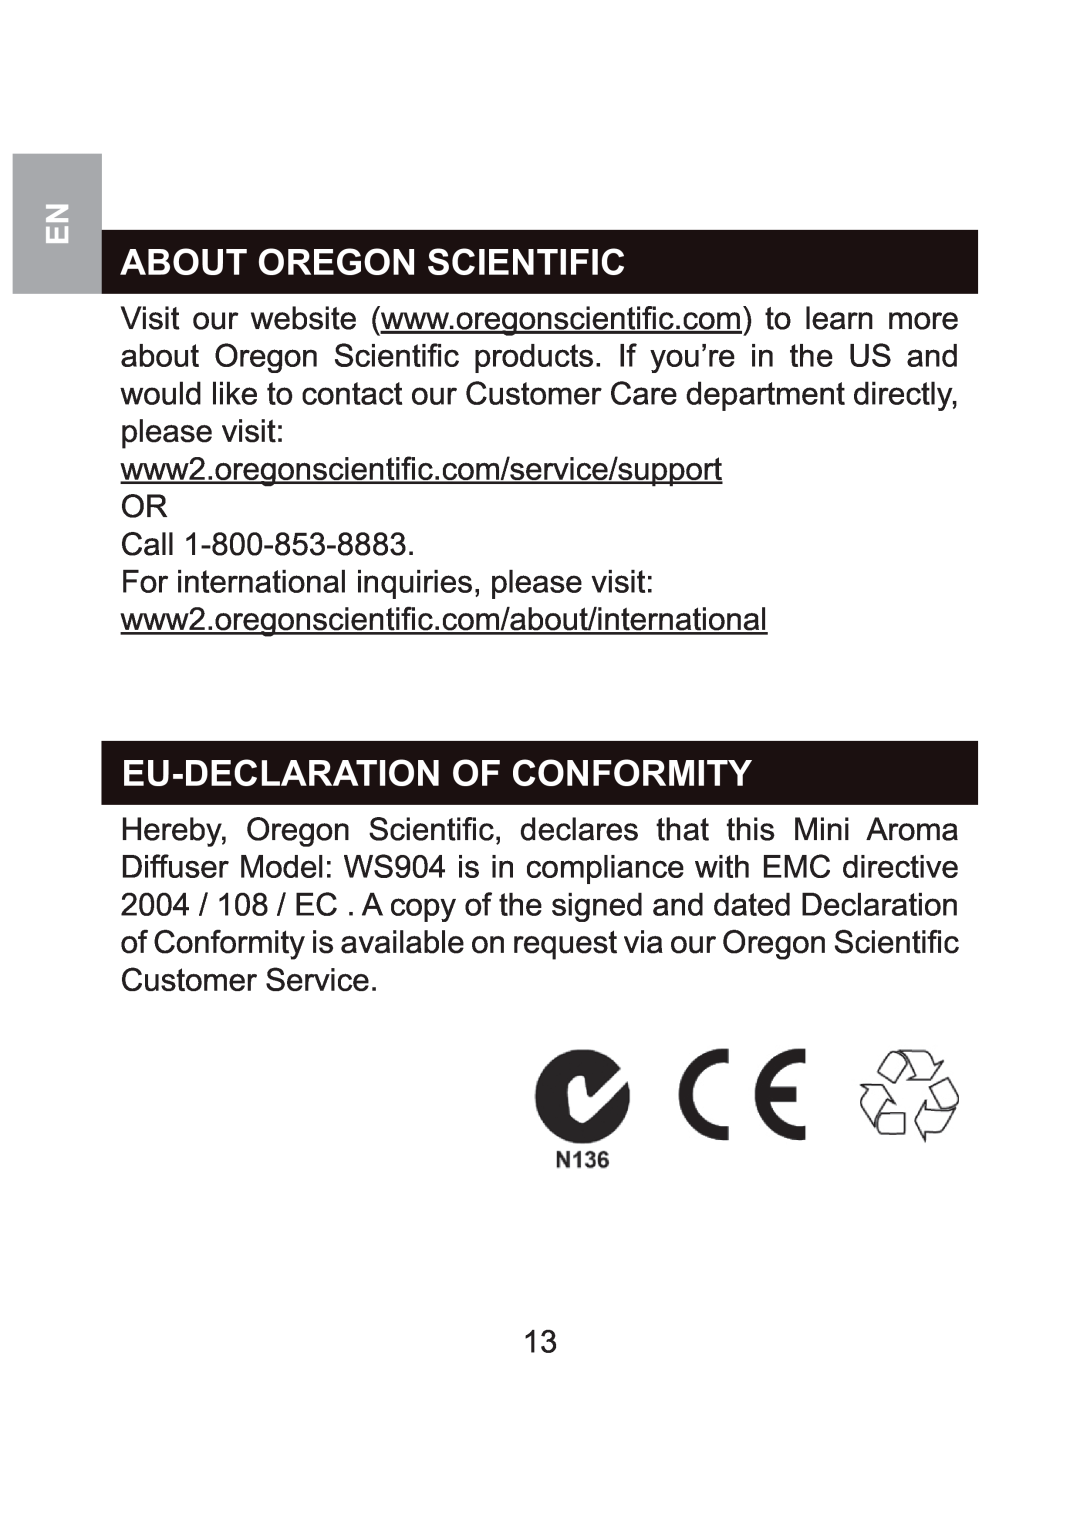 Oregon Scientific WS904 About Oregon Scientific, Eu-Declarationof Conformity, Visit our website, Customer Service 